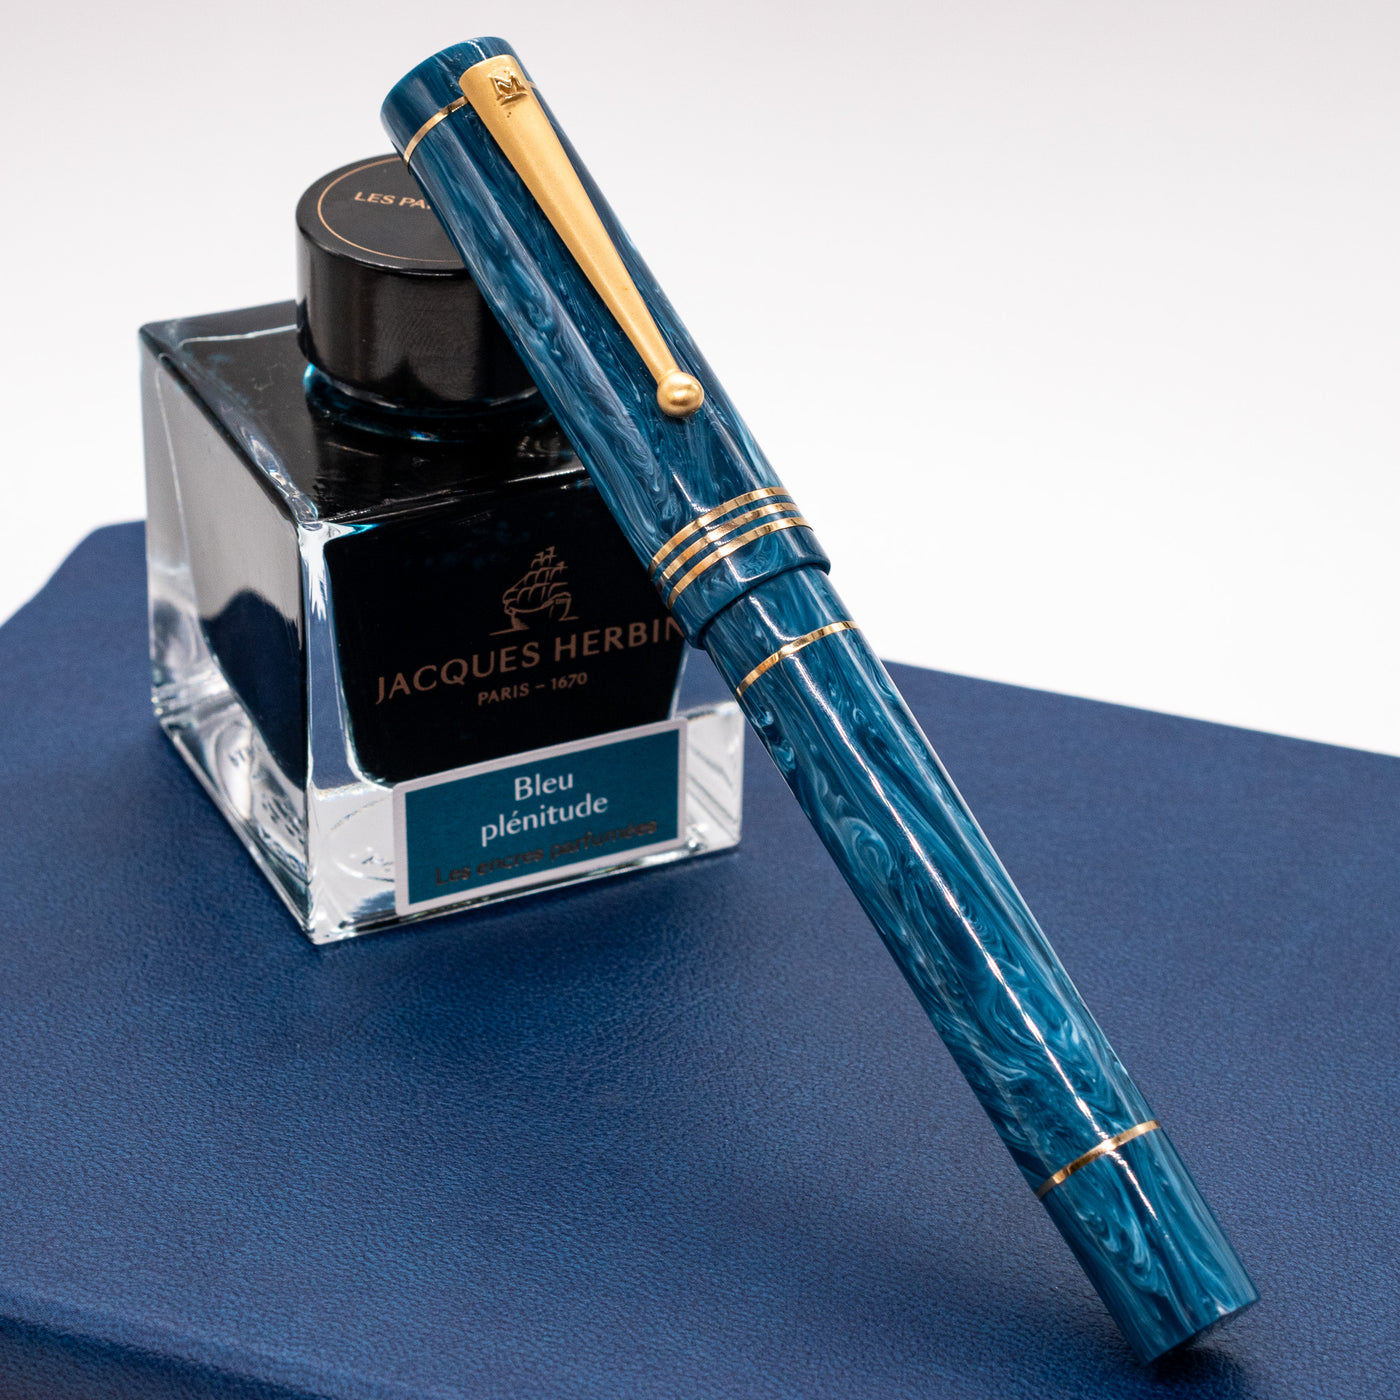 Molteni Modelo 88 Fountain Pen - Capri Blue capped